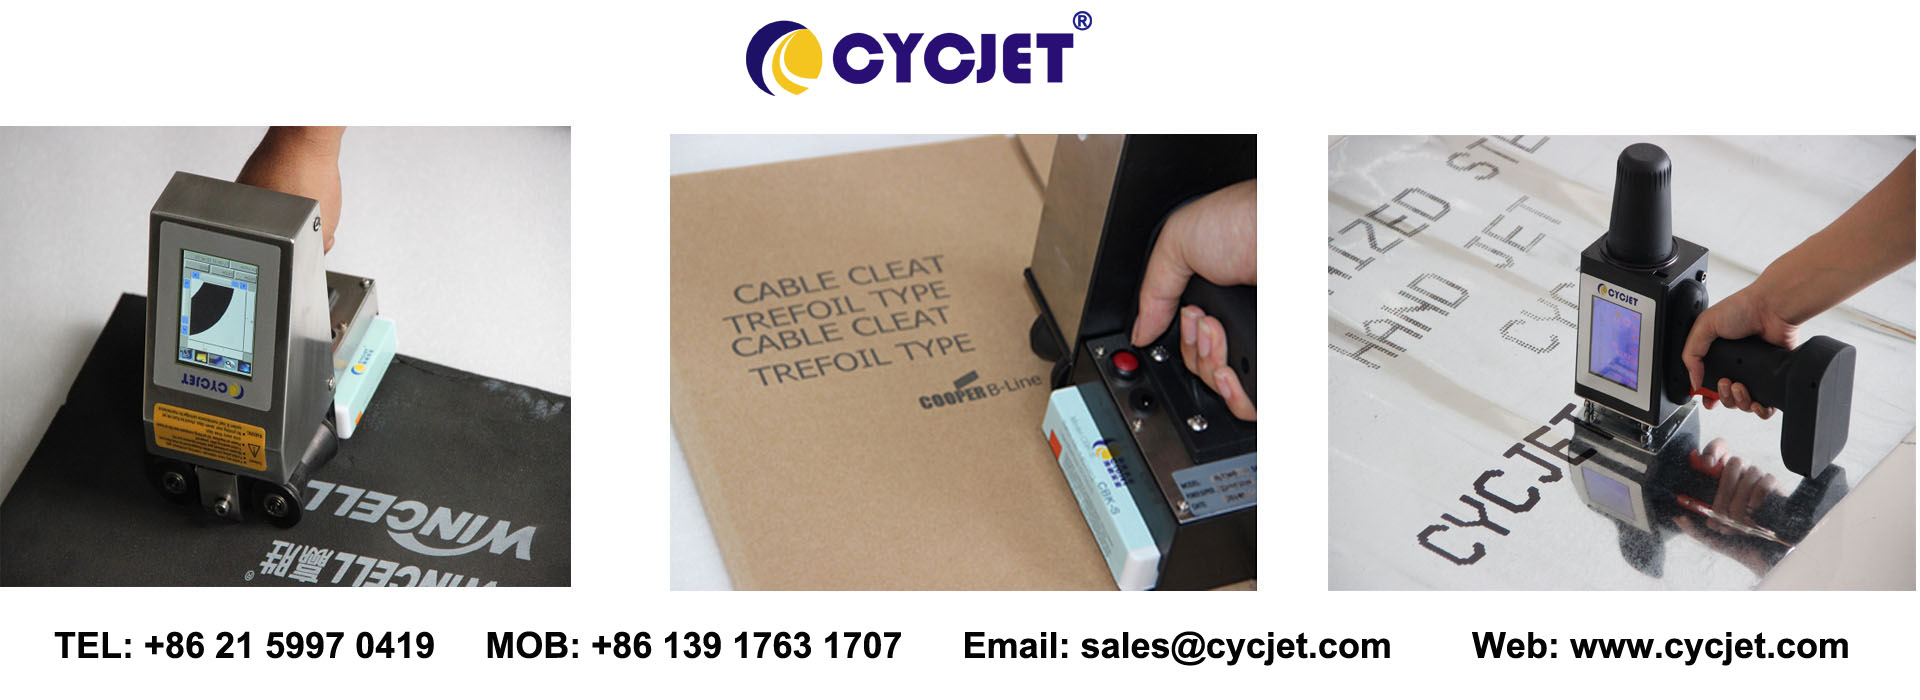 CYCJET Hand Jet Printer.jpg